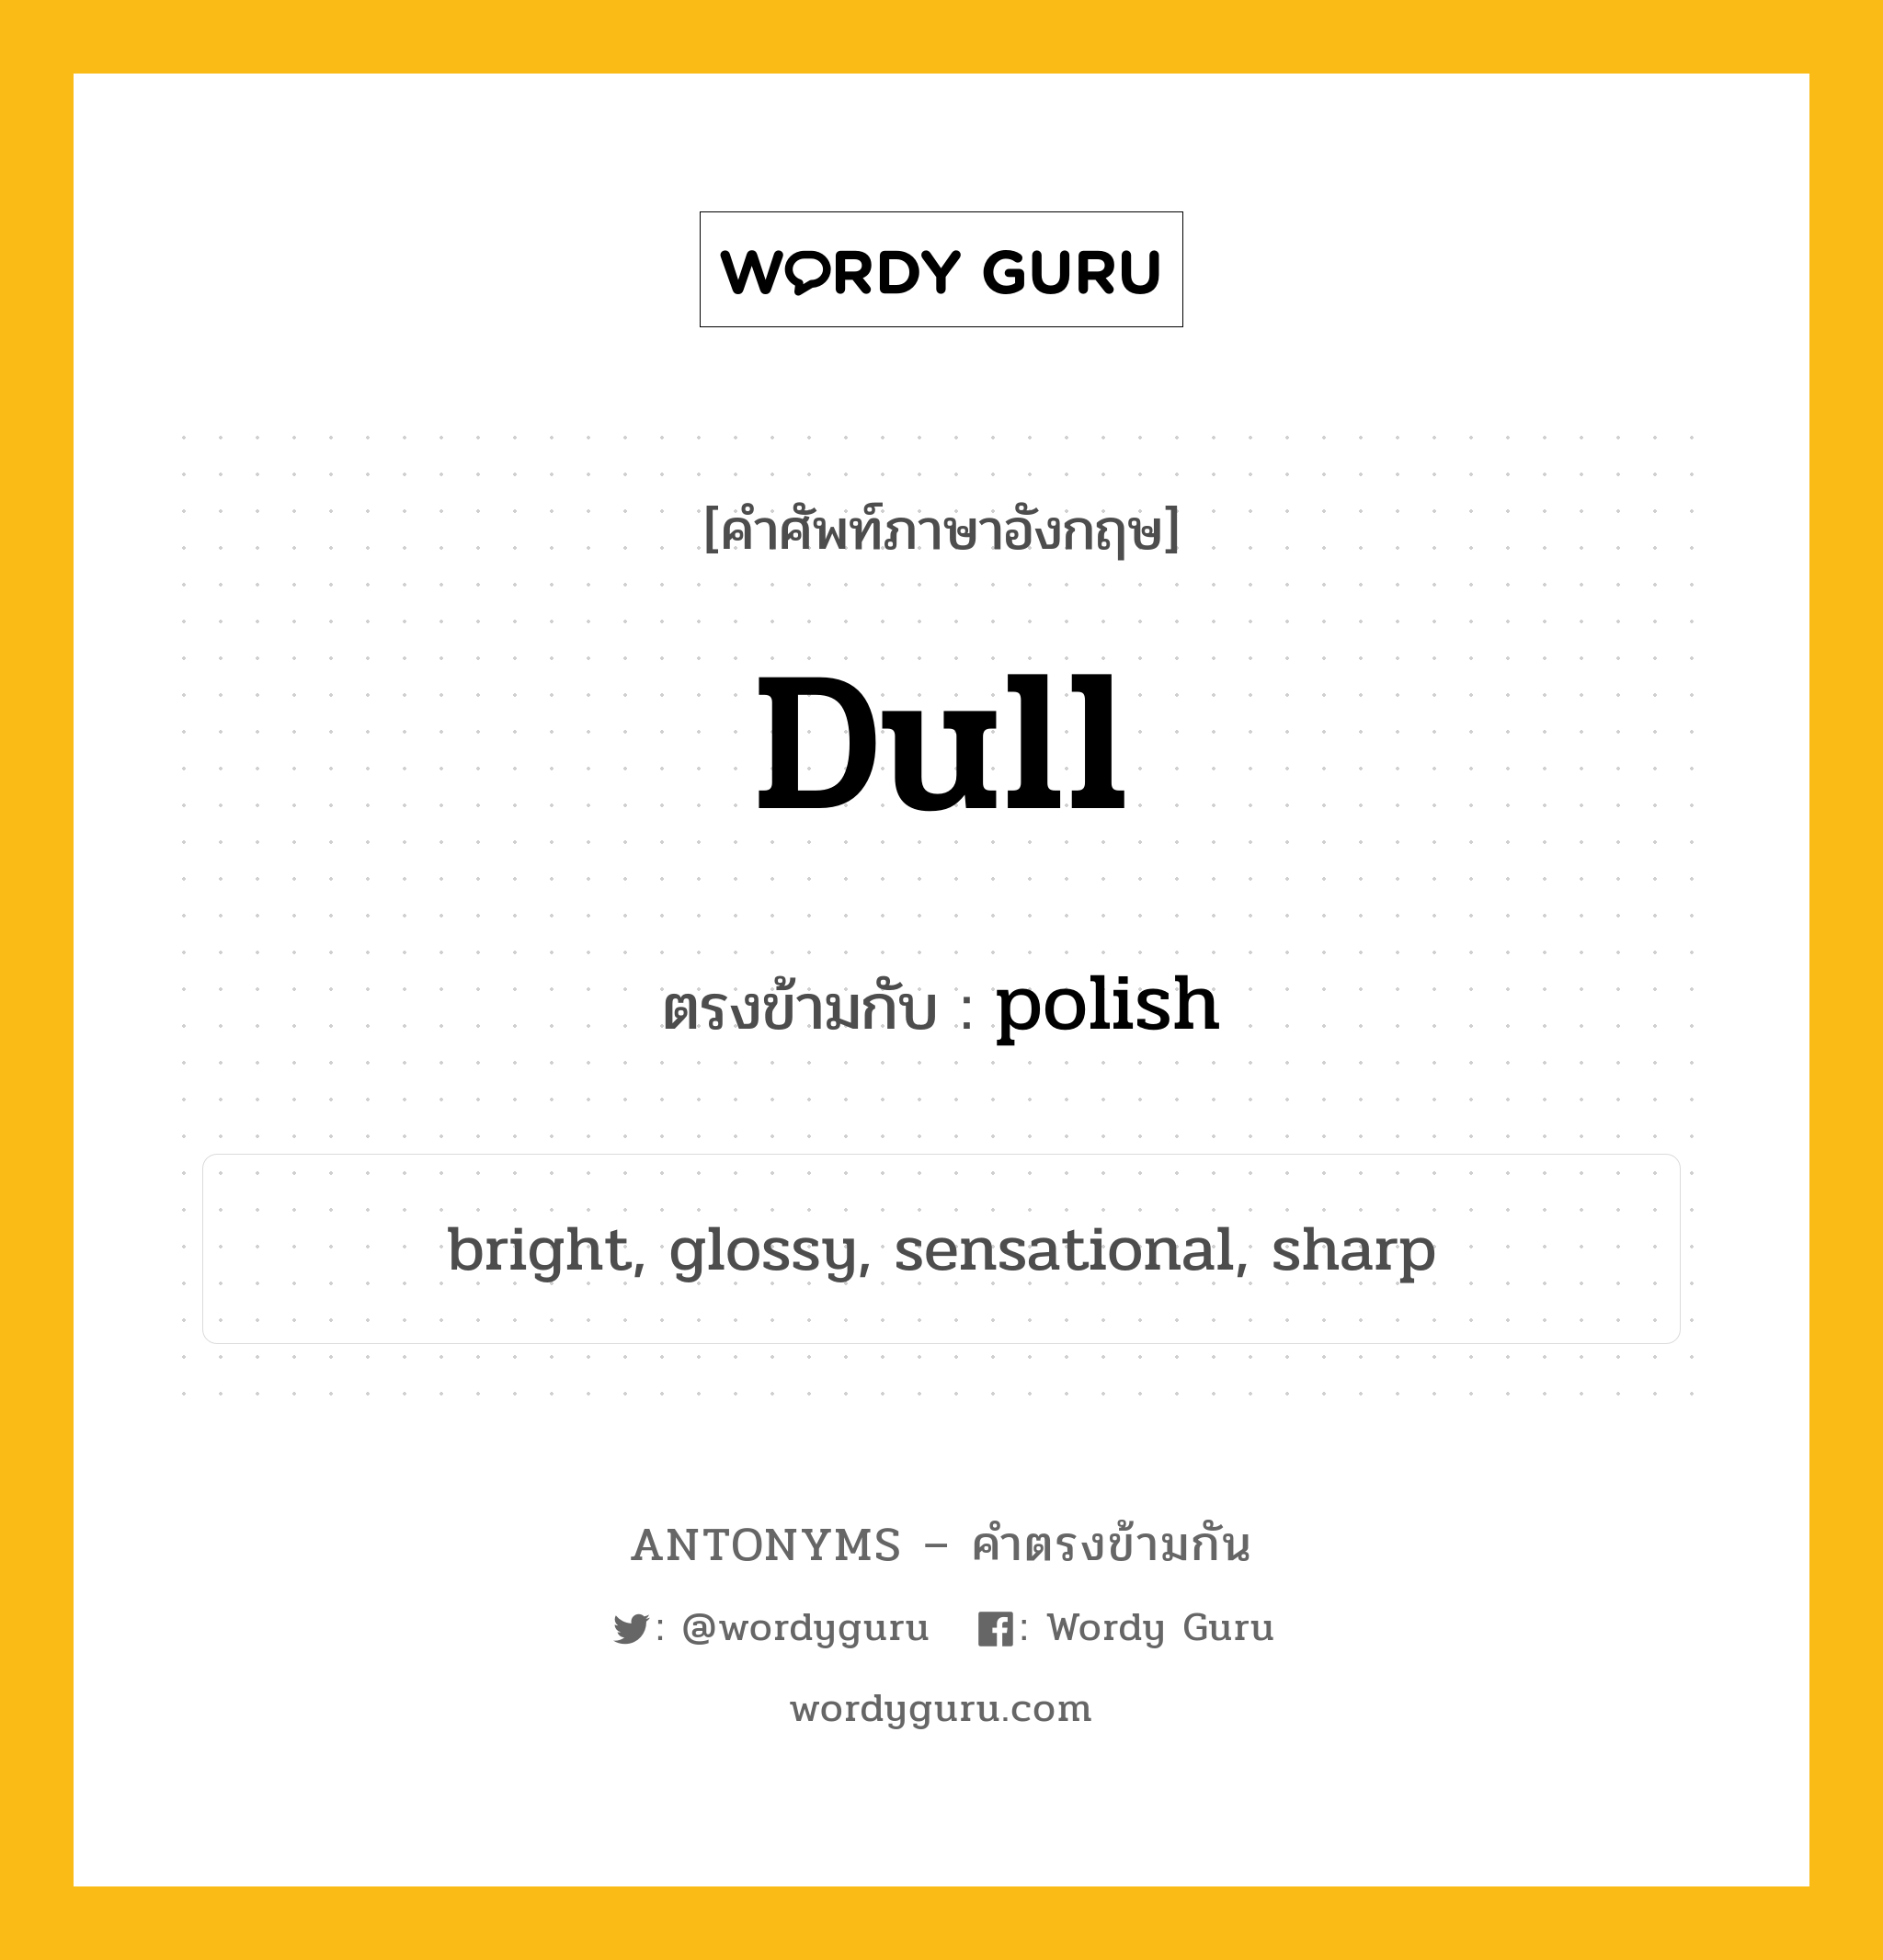 dull เป็นคำตรงข้ามกับคำไหนบ้าง?, คำศัพท์ภาษาอังกฤษที่มีความหมายตรงข้ามกัน dull ตรงข้ามกับ polish หมวด polish